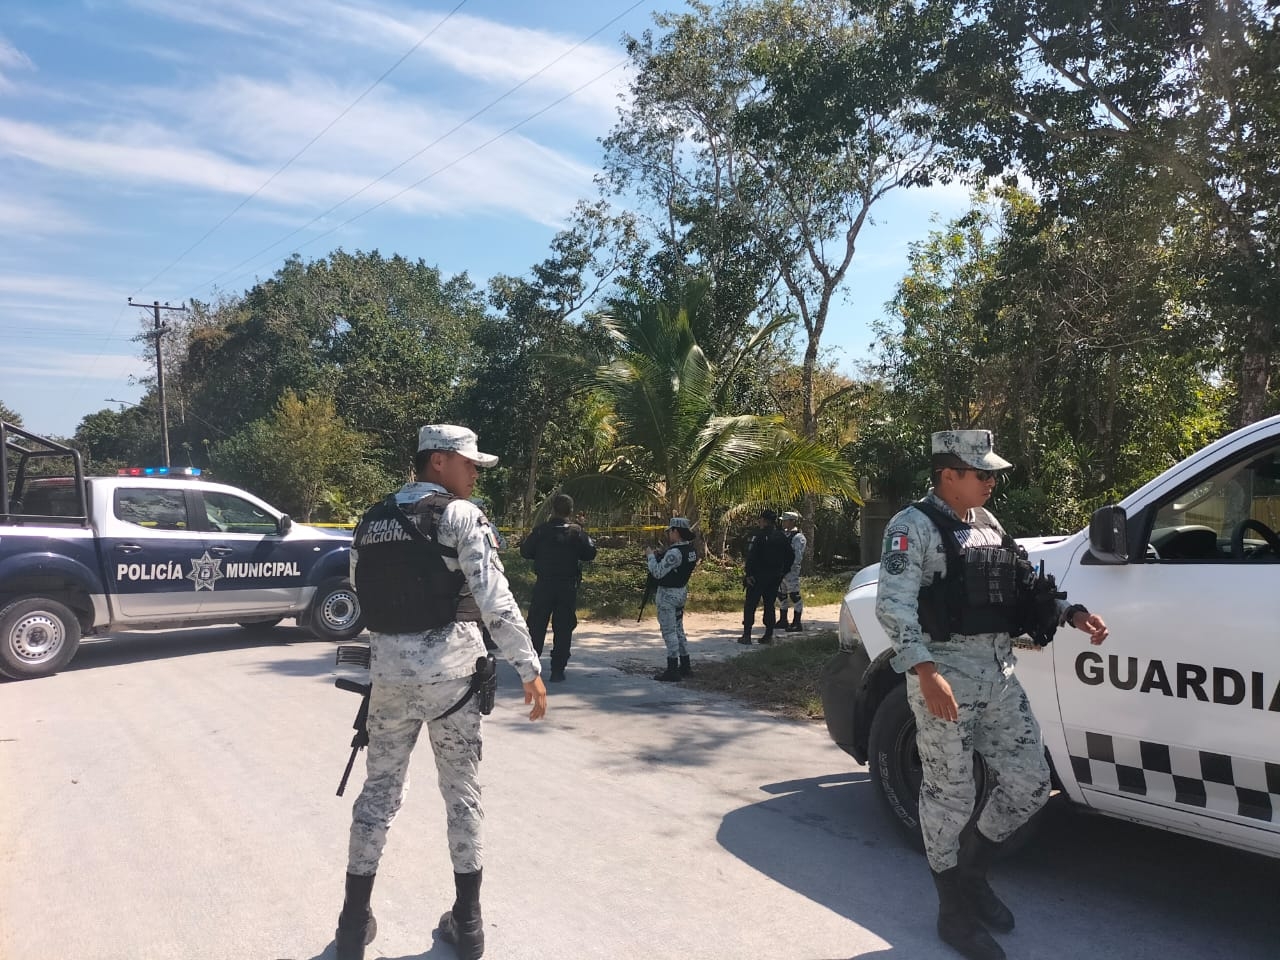 Para la policía de Quintana Roo, los ataques armados son confrontaciones entre criminales “que no afectan al ciudadano”